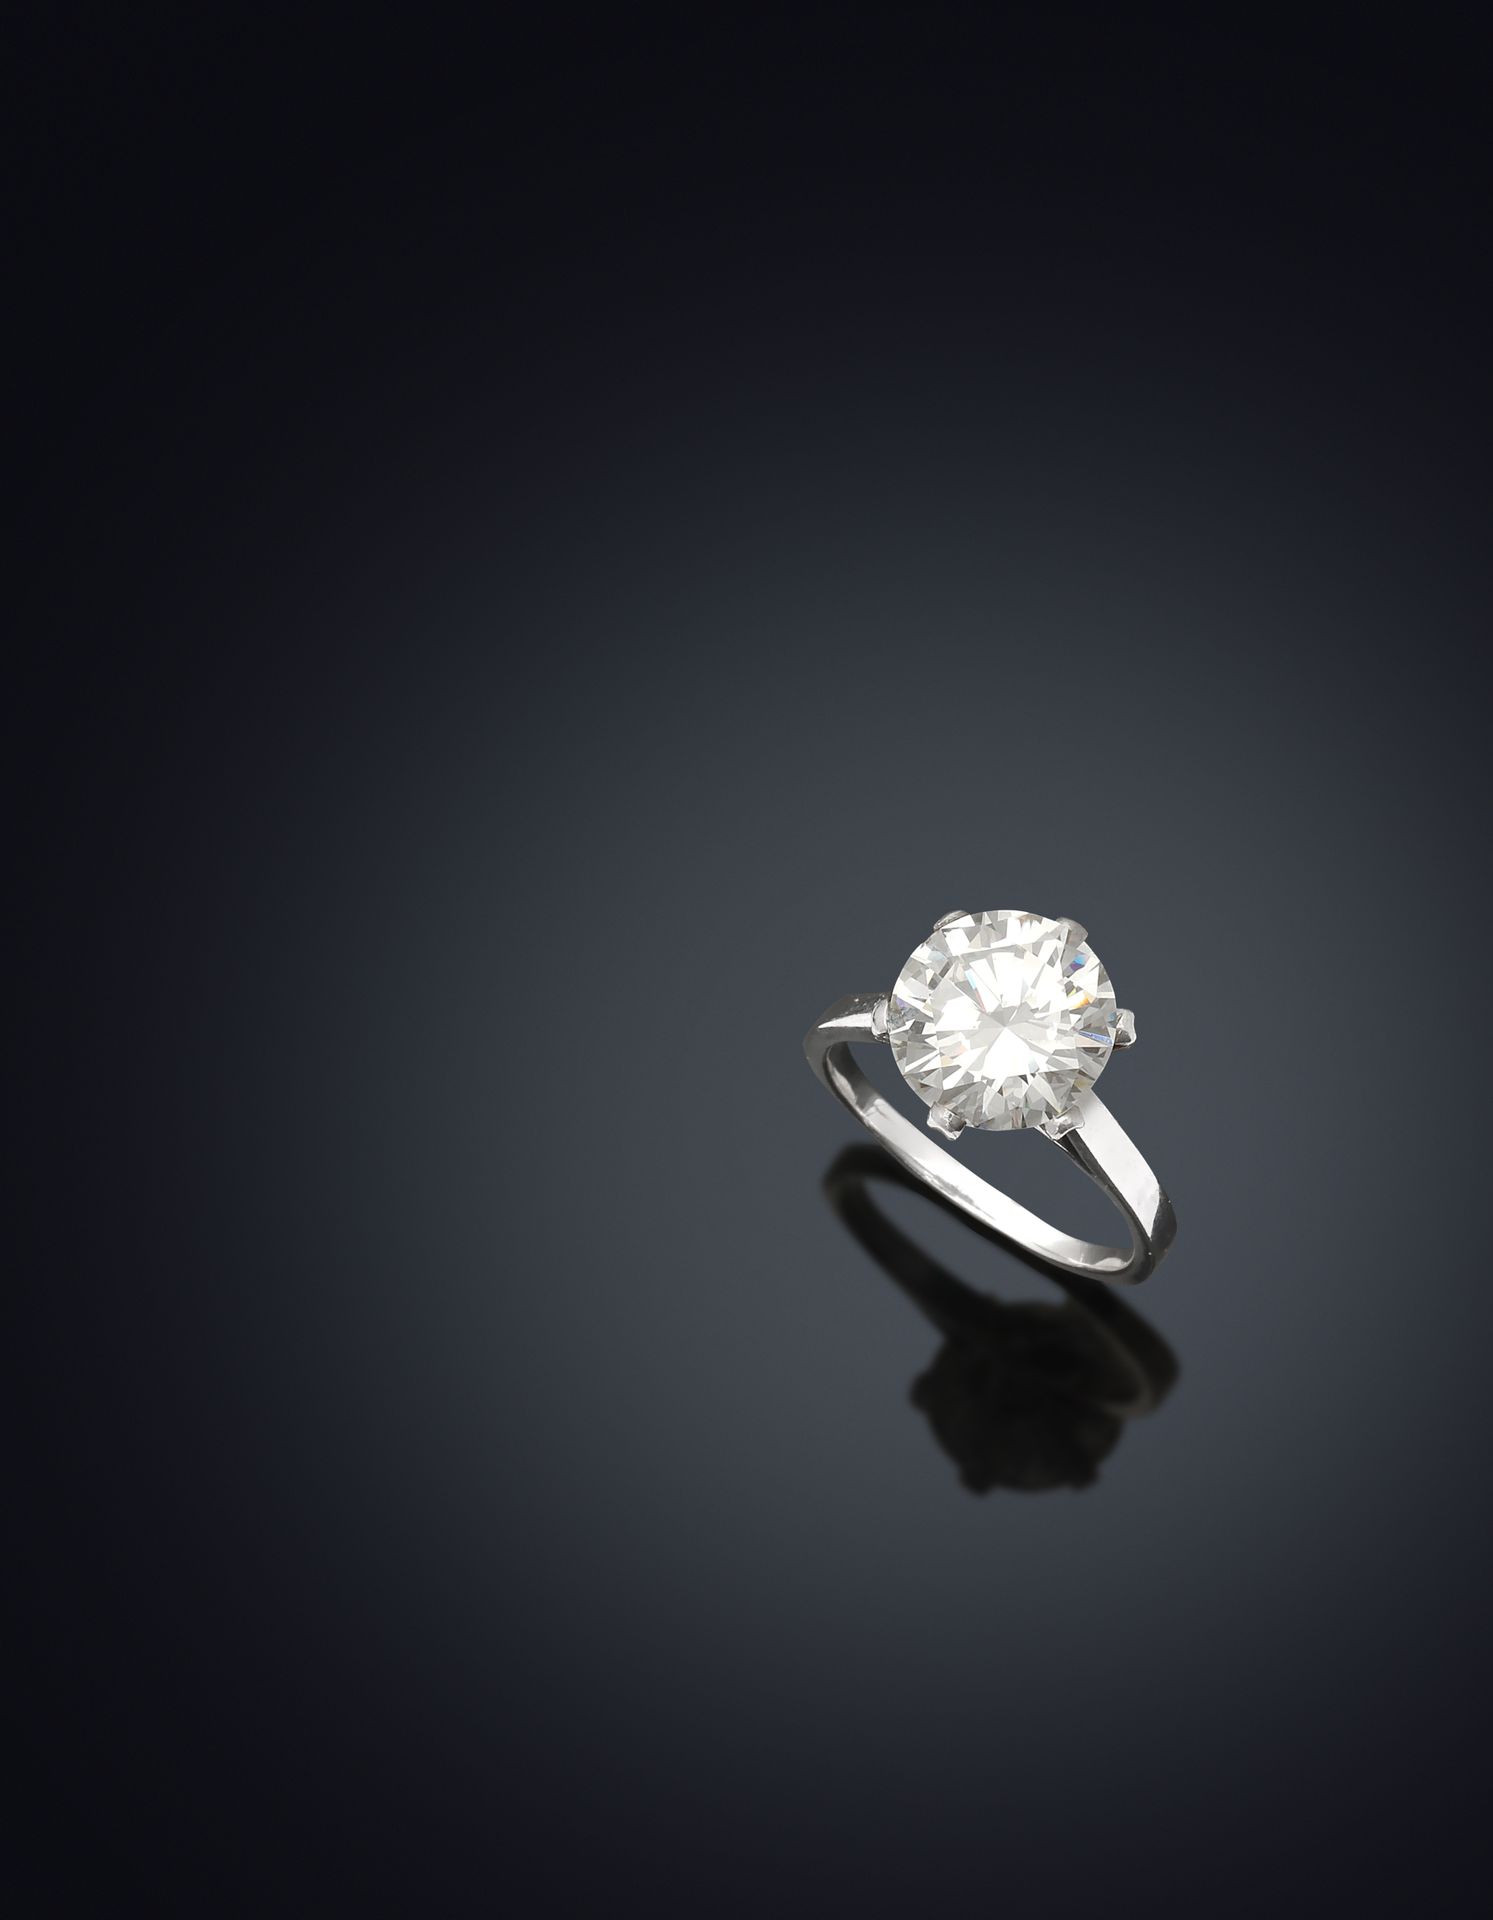 Null 白金18K 750千分之一和铂金950千分之一的单颗钻石，以爪式镶嵌方式装饰一颗现代尺寸的3.58克拉的钻石。

有法国大师的拳头痕迹。

手指的周长&hellip;